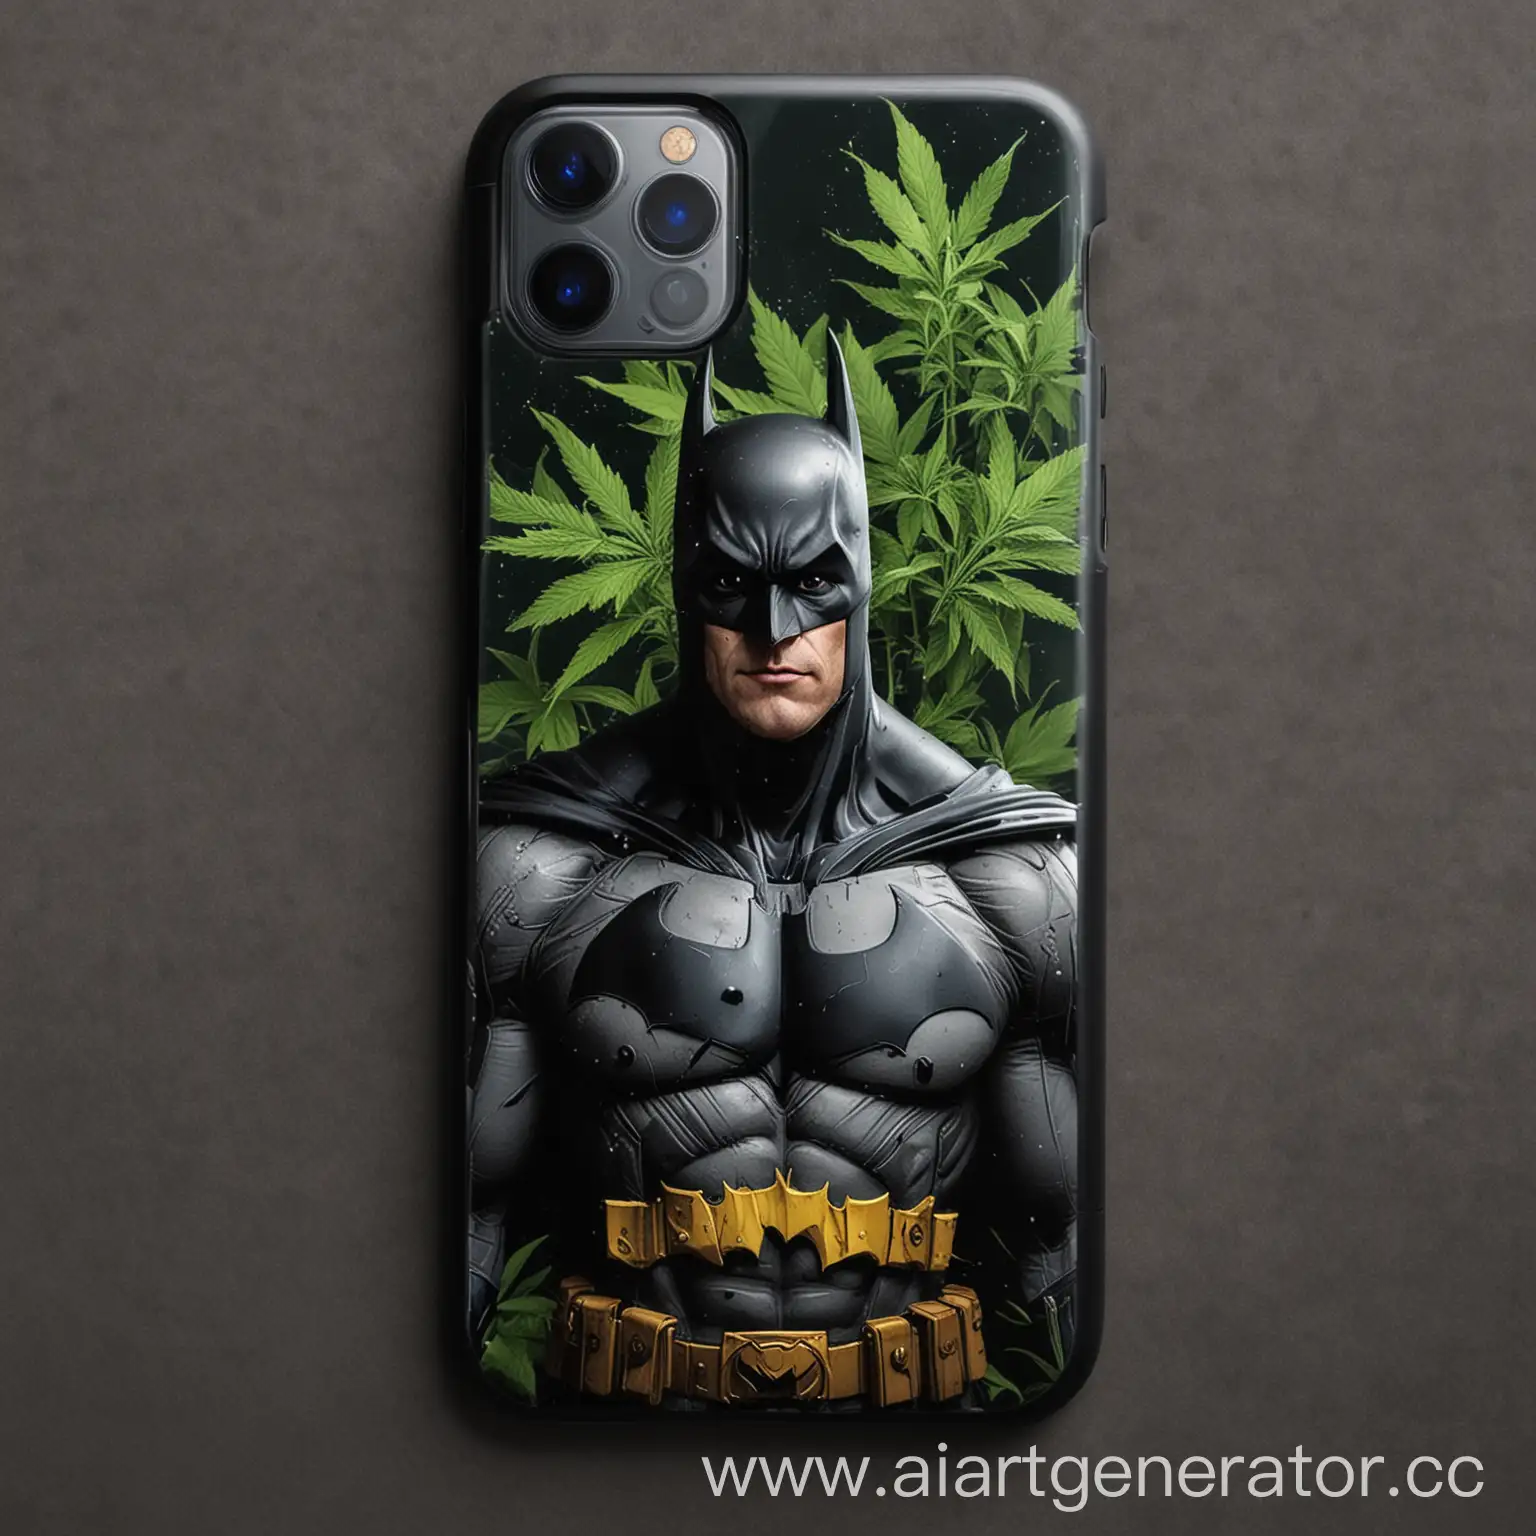 Создай Iphone 15 Pro Max на заднем корпусе которого нарисовано вставленное изображение бэтмена с канабисом